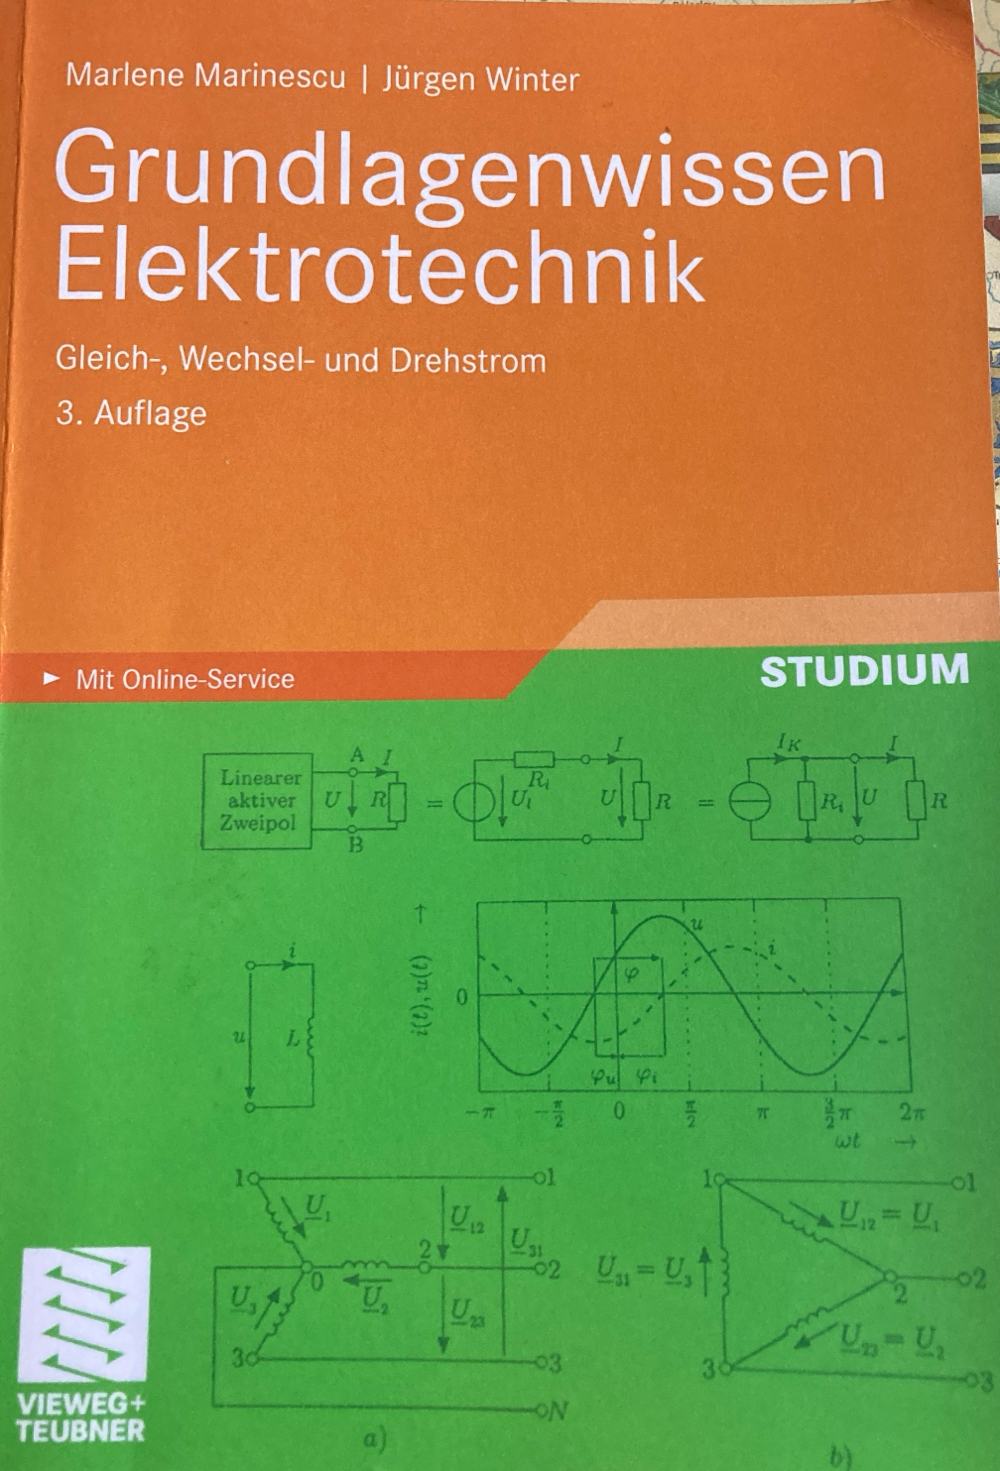 Grundlagenwissen Elektrotechnik Gleich-, Wechsel- und Drehstrom 3. Auflage